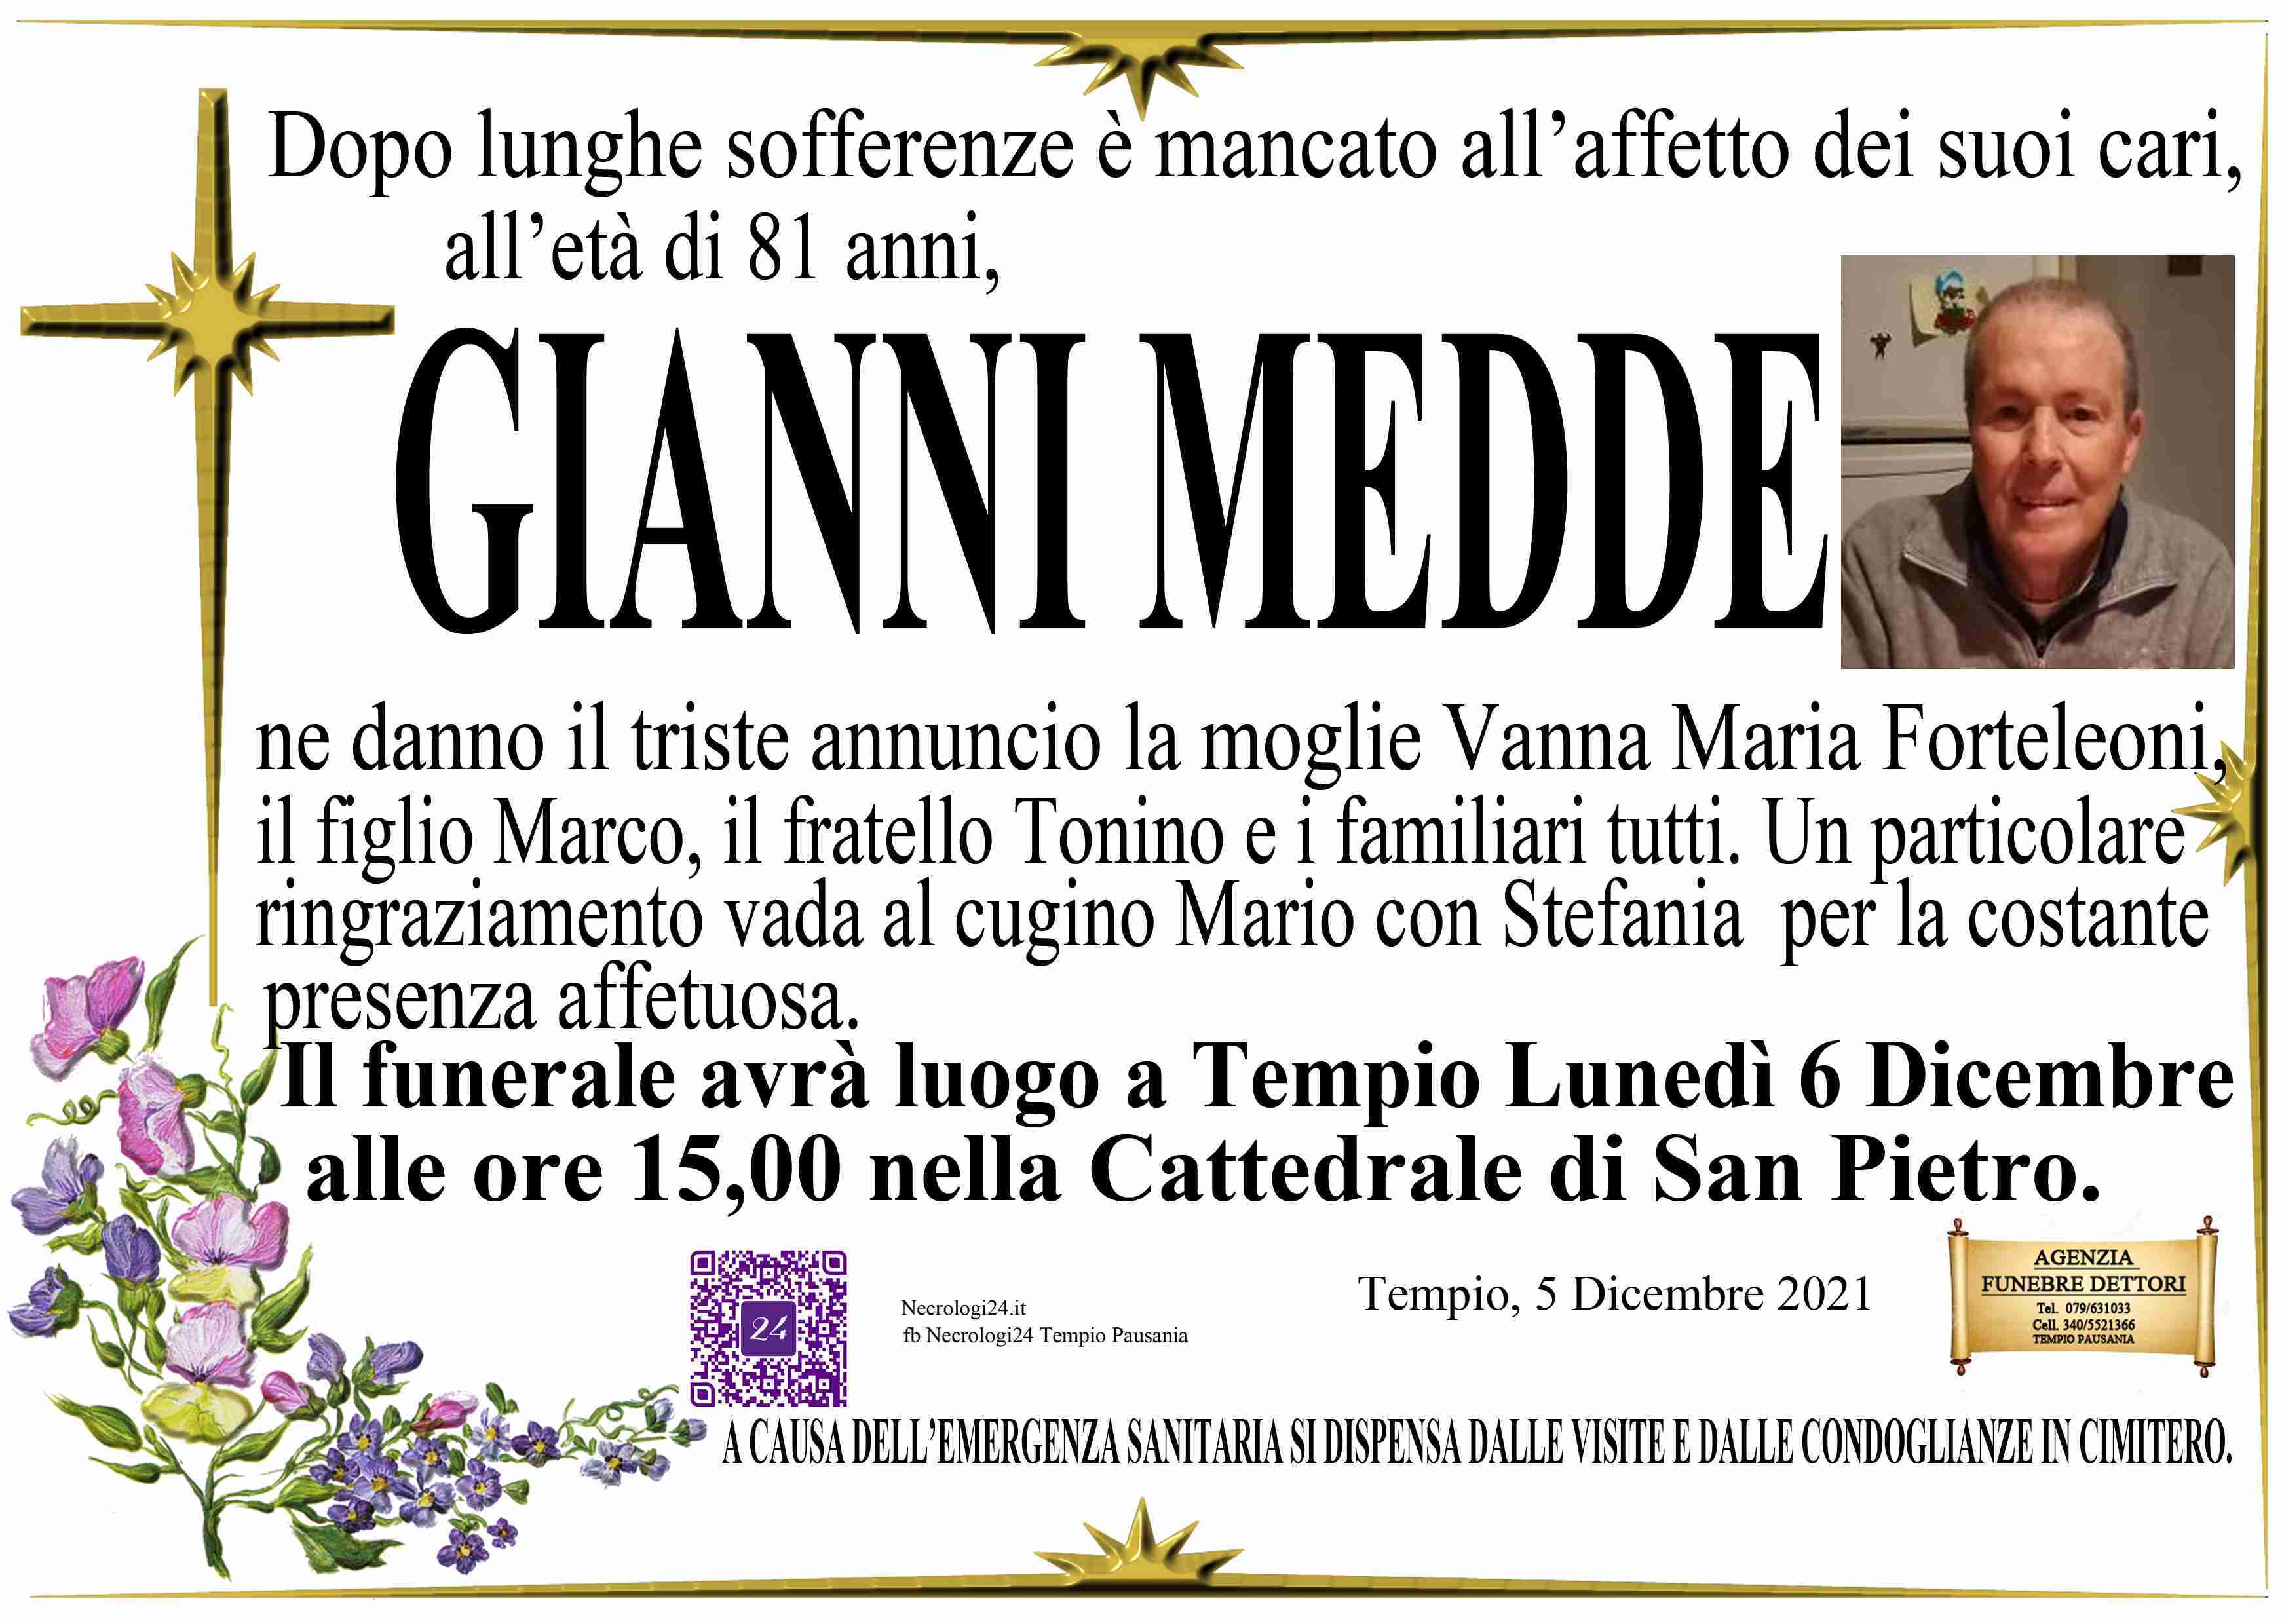 Gianni Medde